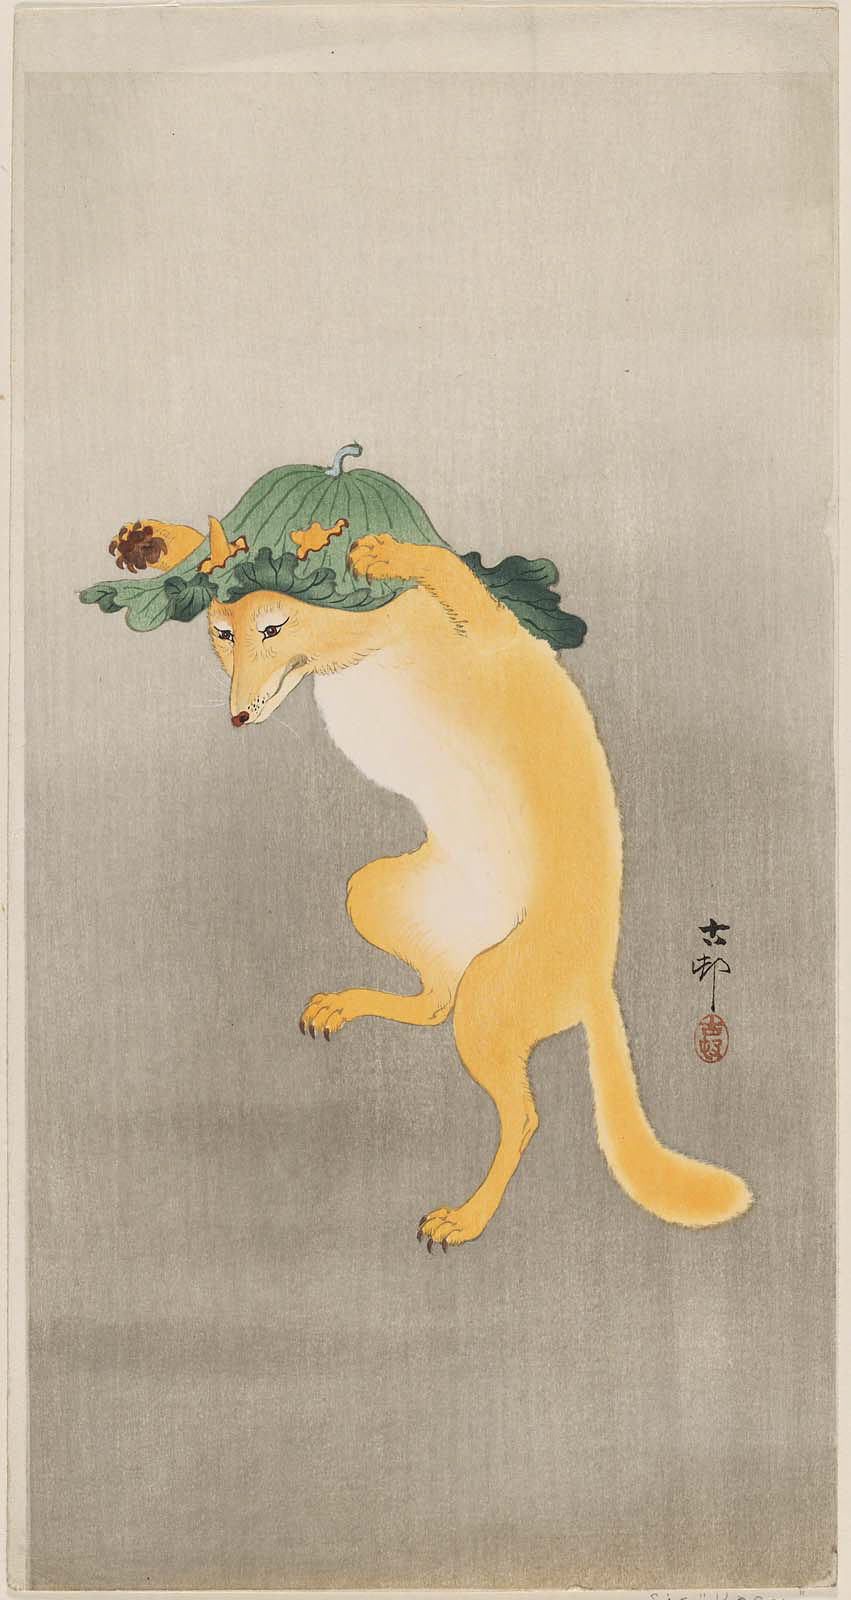 戴荷葉帽跳舞的狐狸 by Ohara Koson - 1900s–1910s - 36.3 x 19 cm 